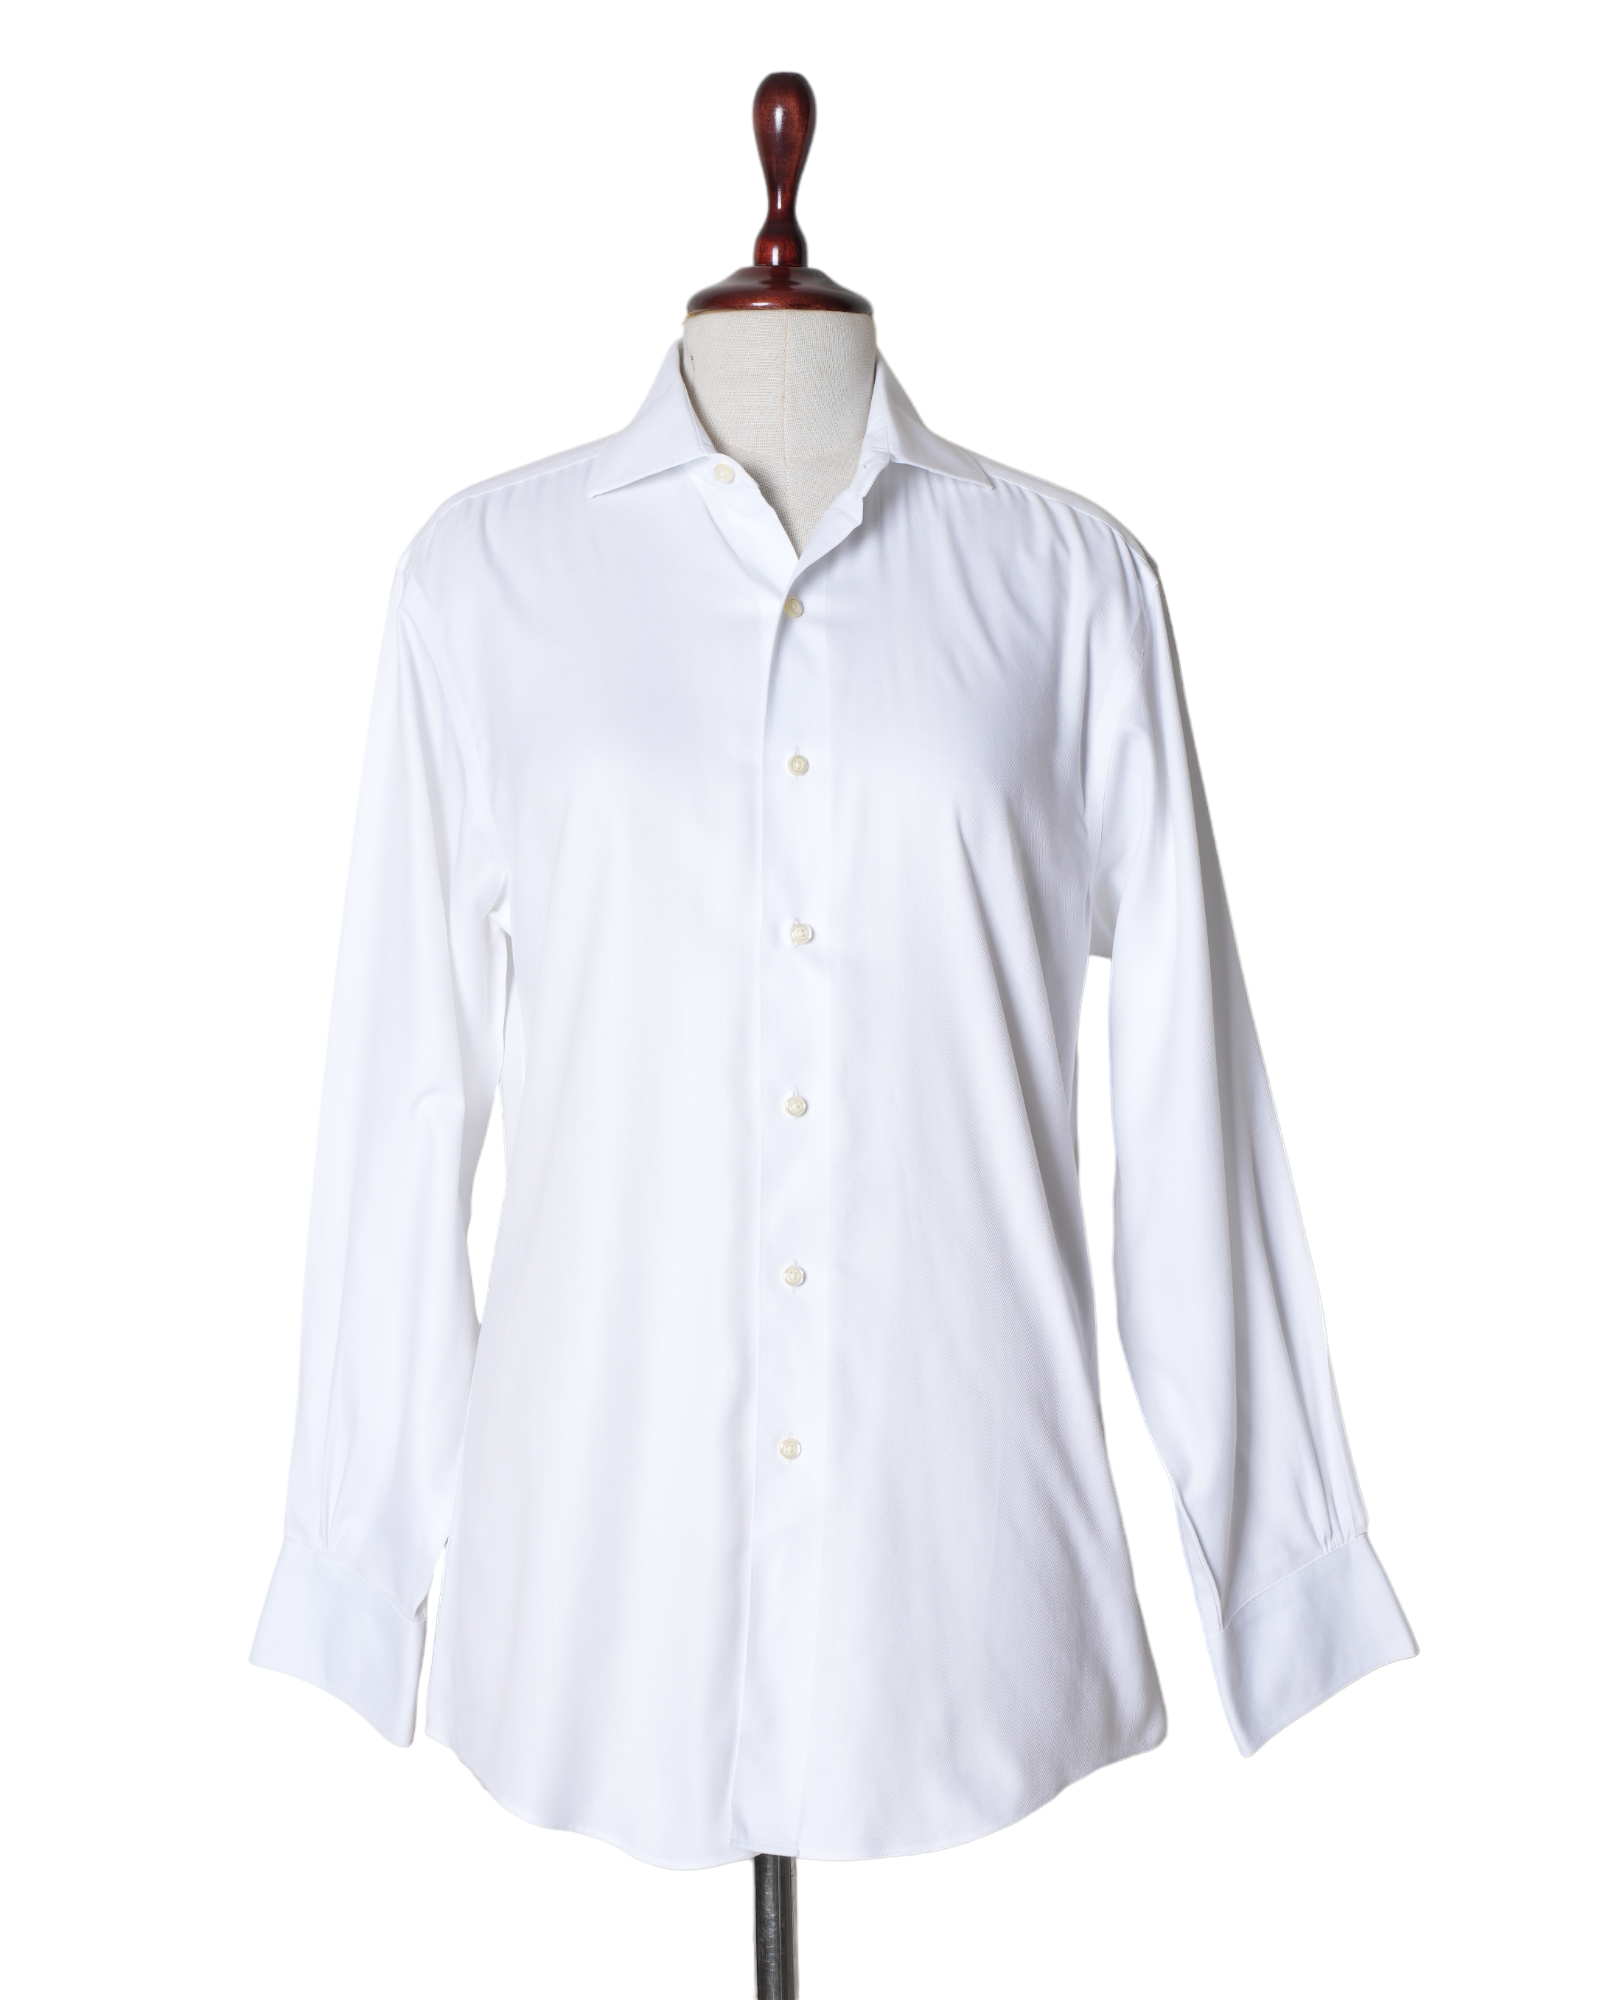 Brooks & Brothers Plain White Shirt